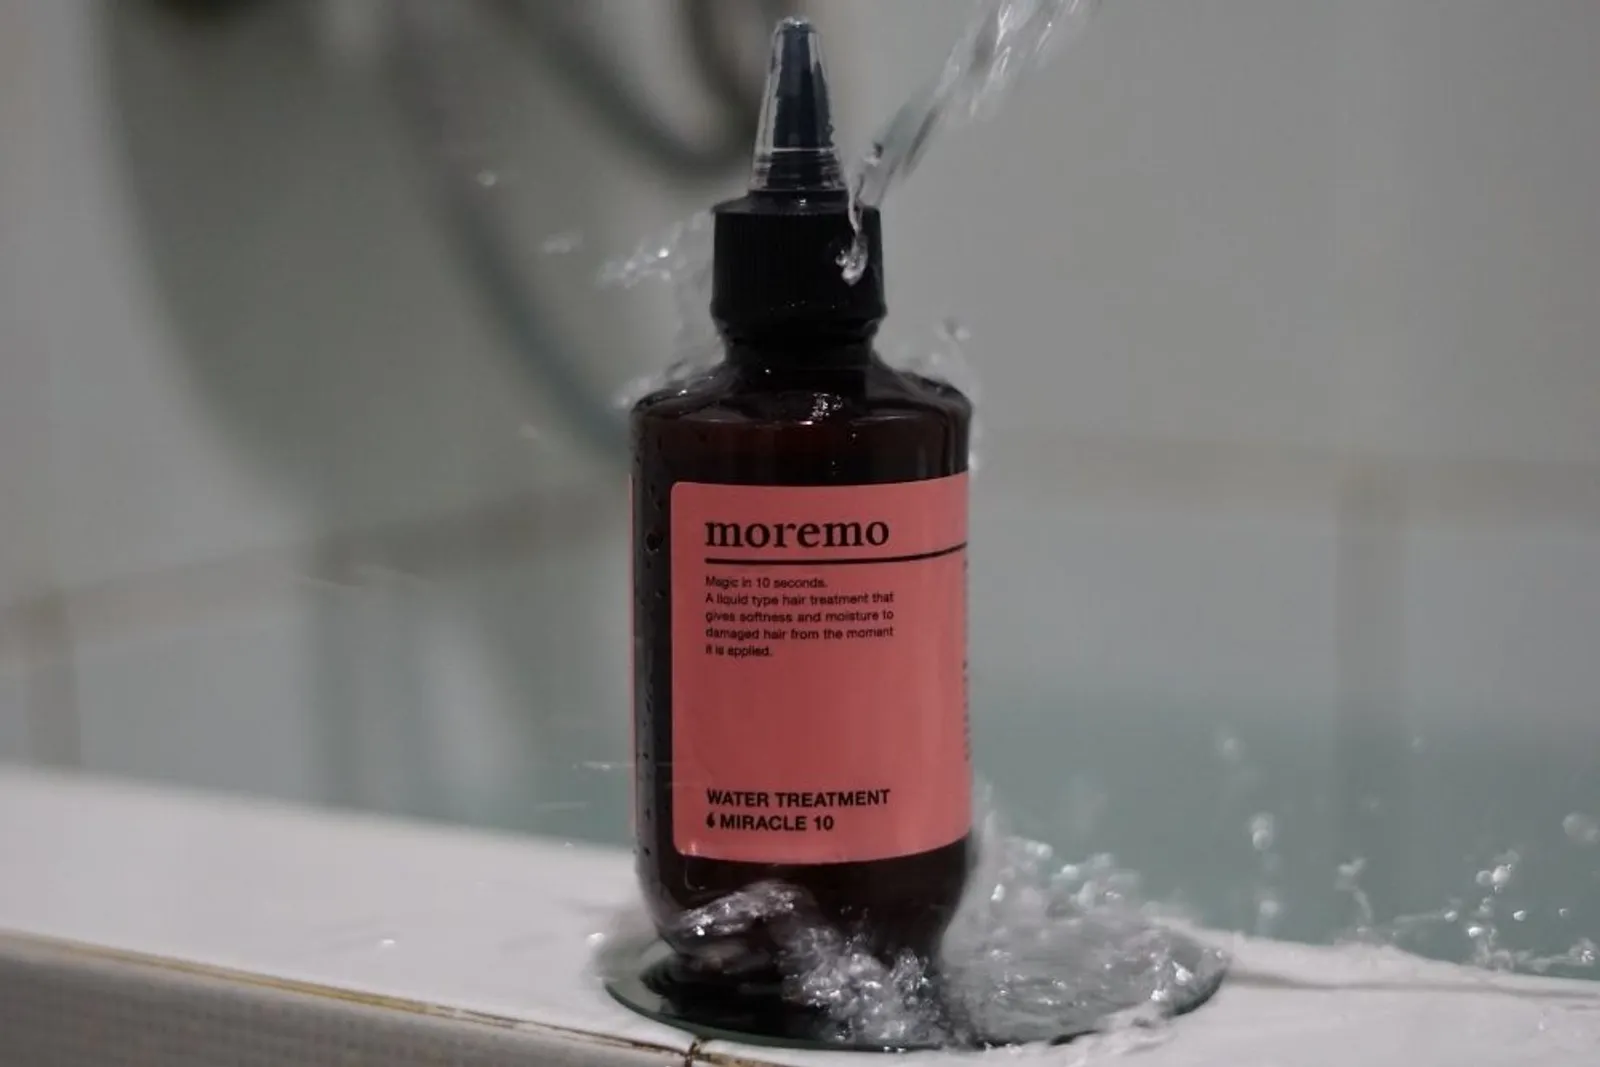 Review: Moremo Water Treatment Miracle 10, Rambut Lembut dalam Sekejap